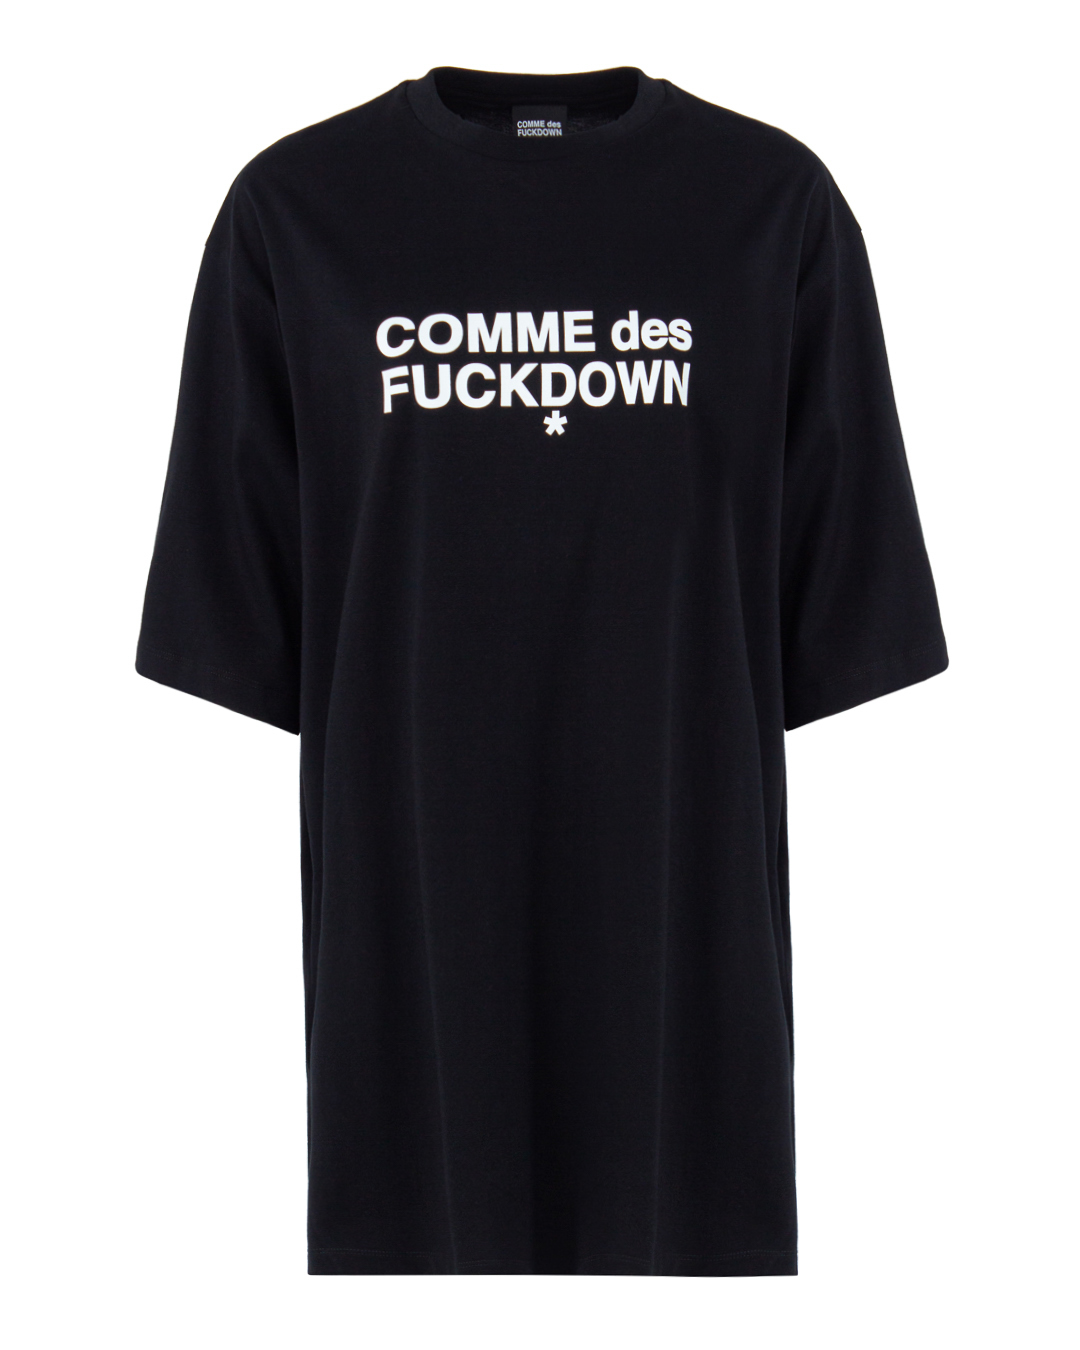 платье COMME des FUCKDOWN FDS3CDFD2086 черный m, размер m - фото 1